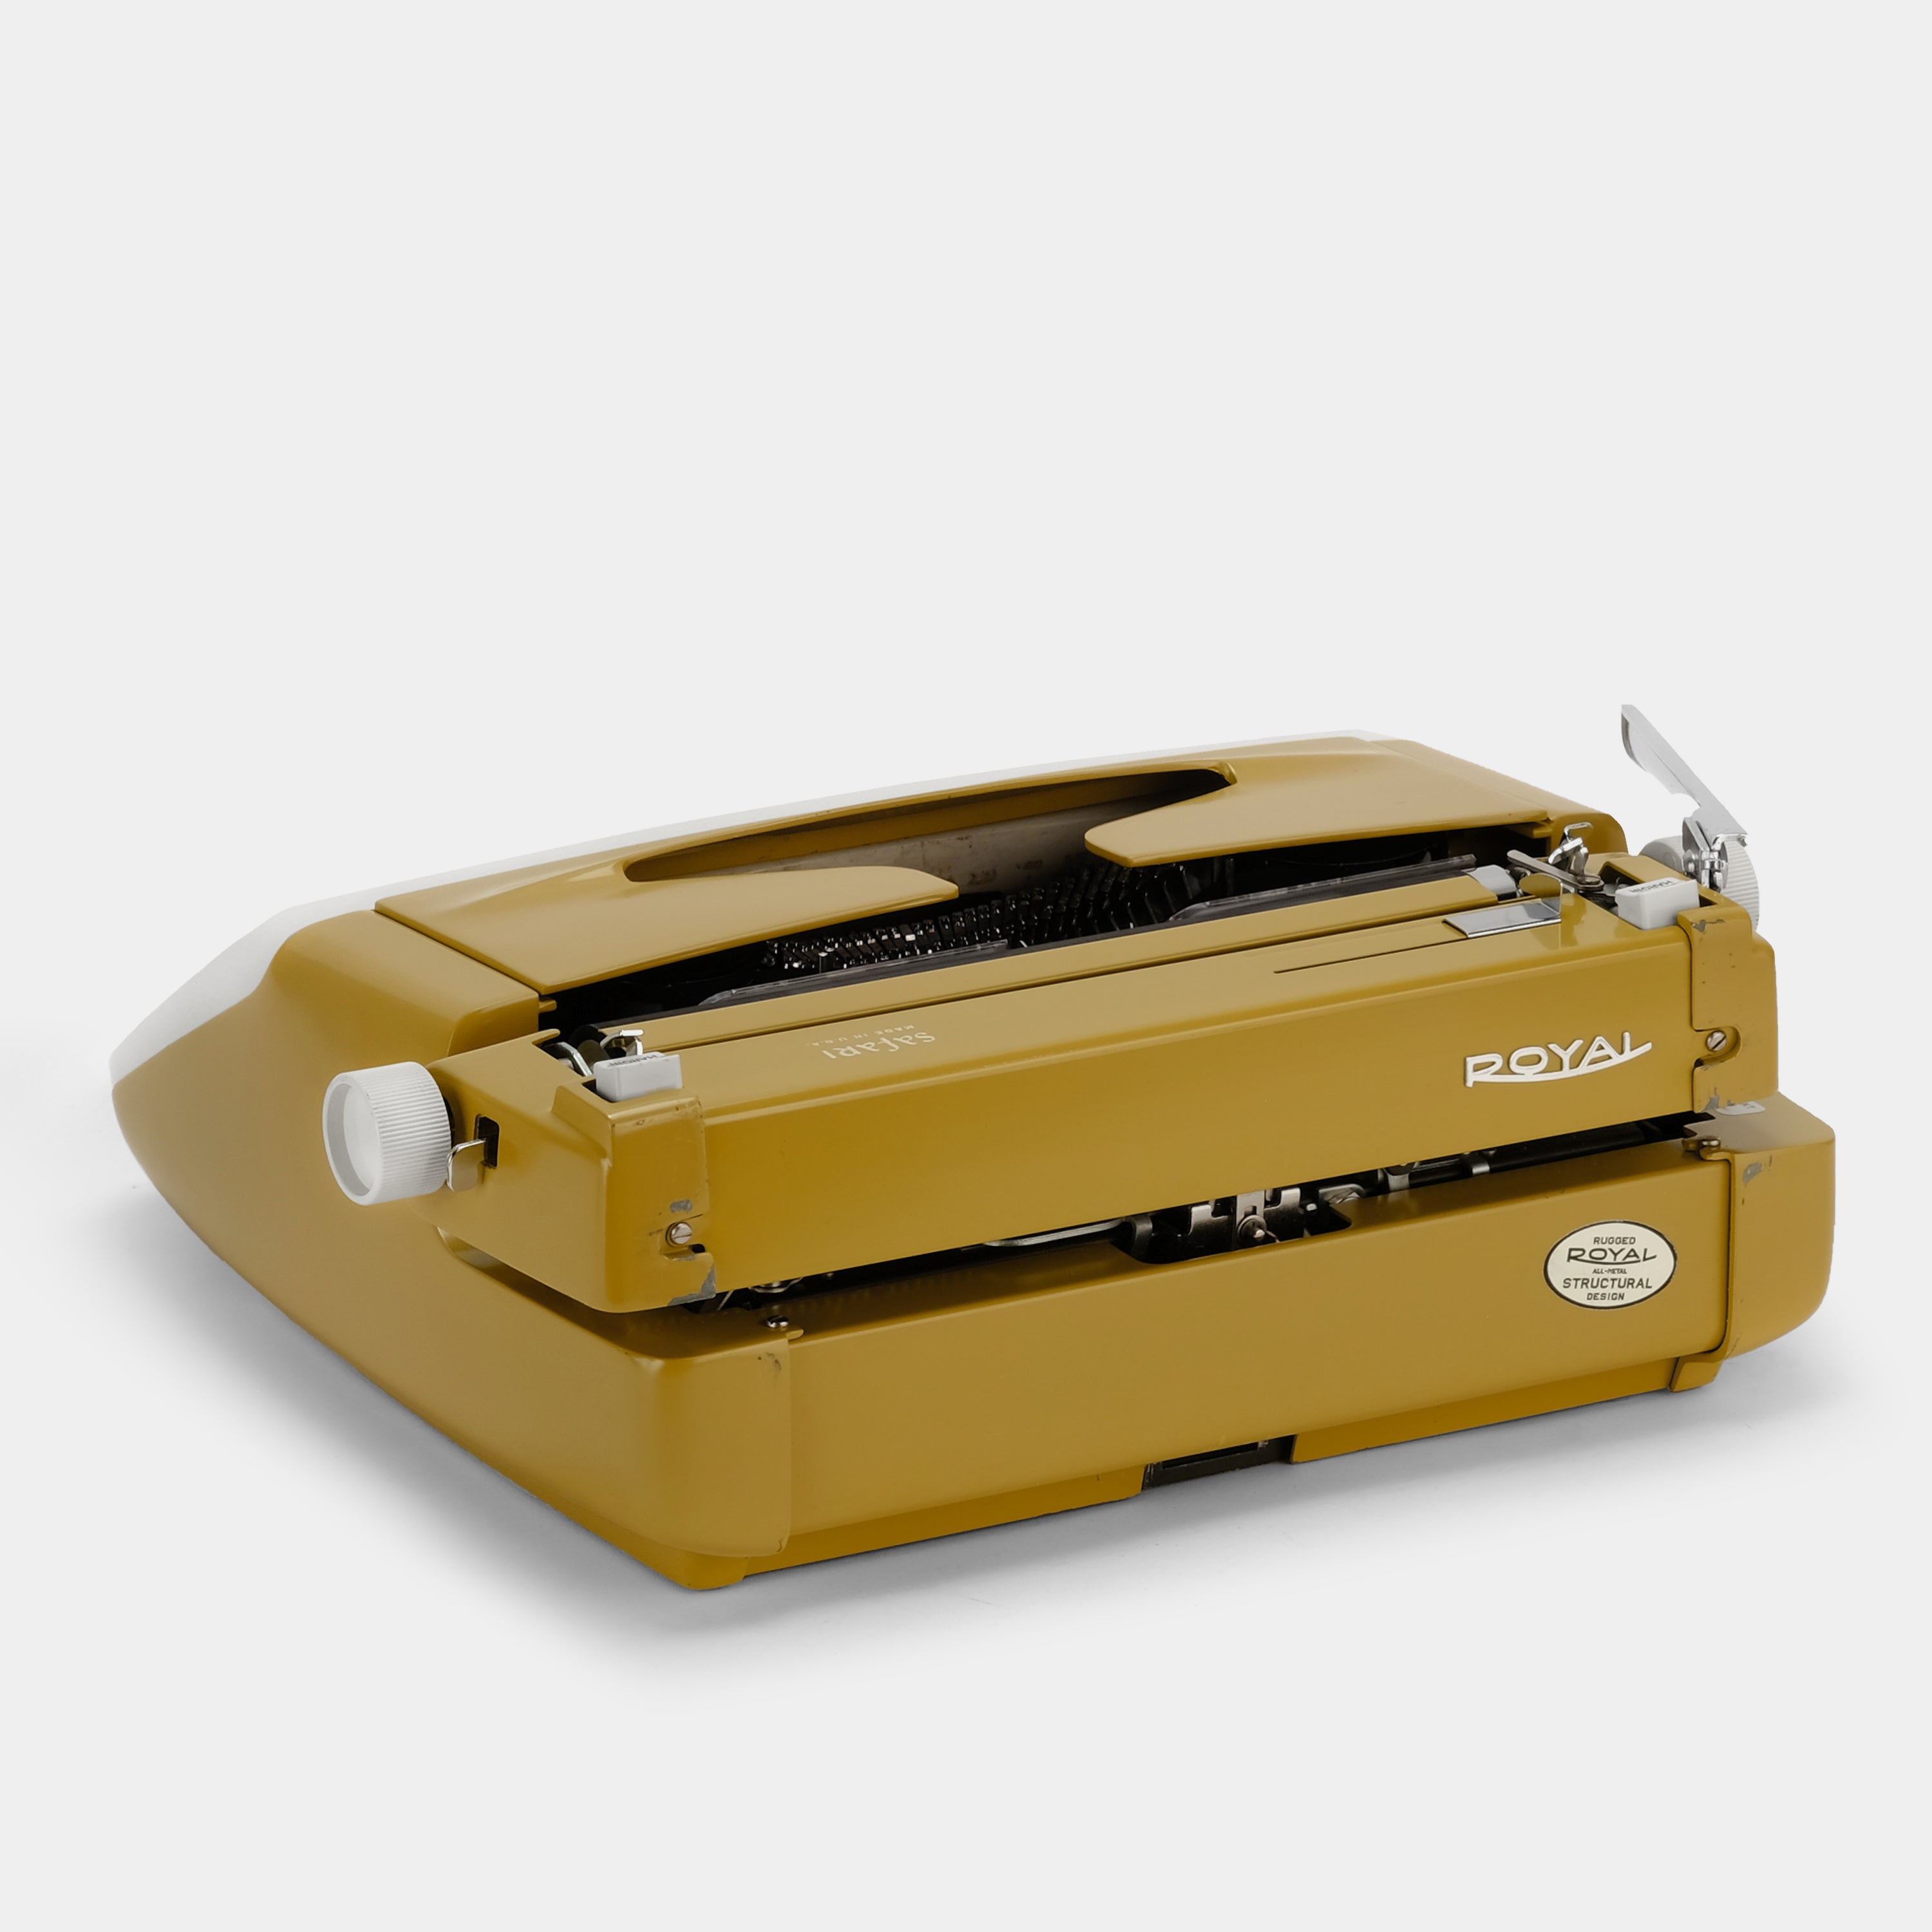 Royal Safari Yellow Manual Typewriter and Case